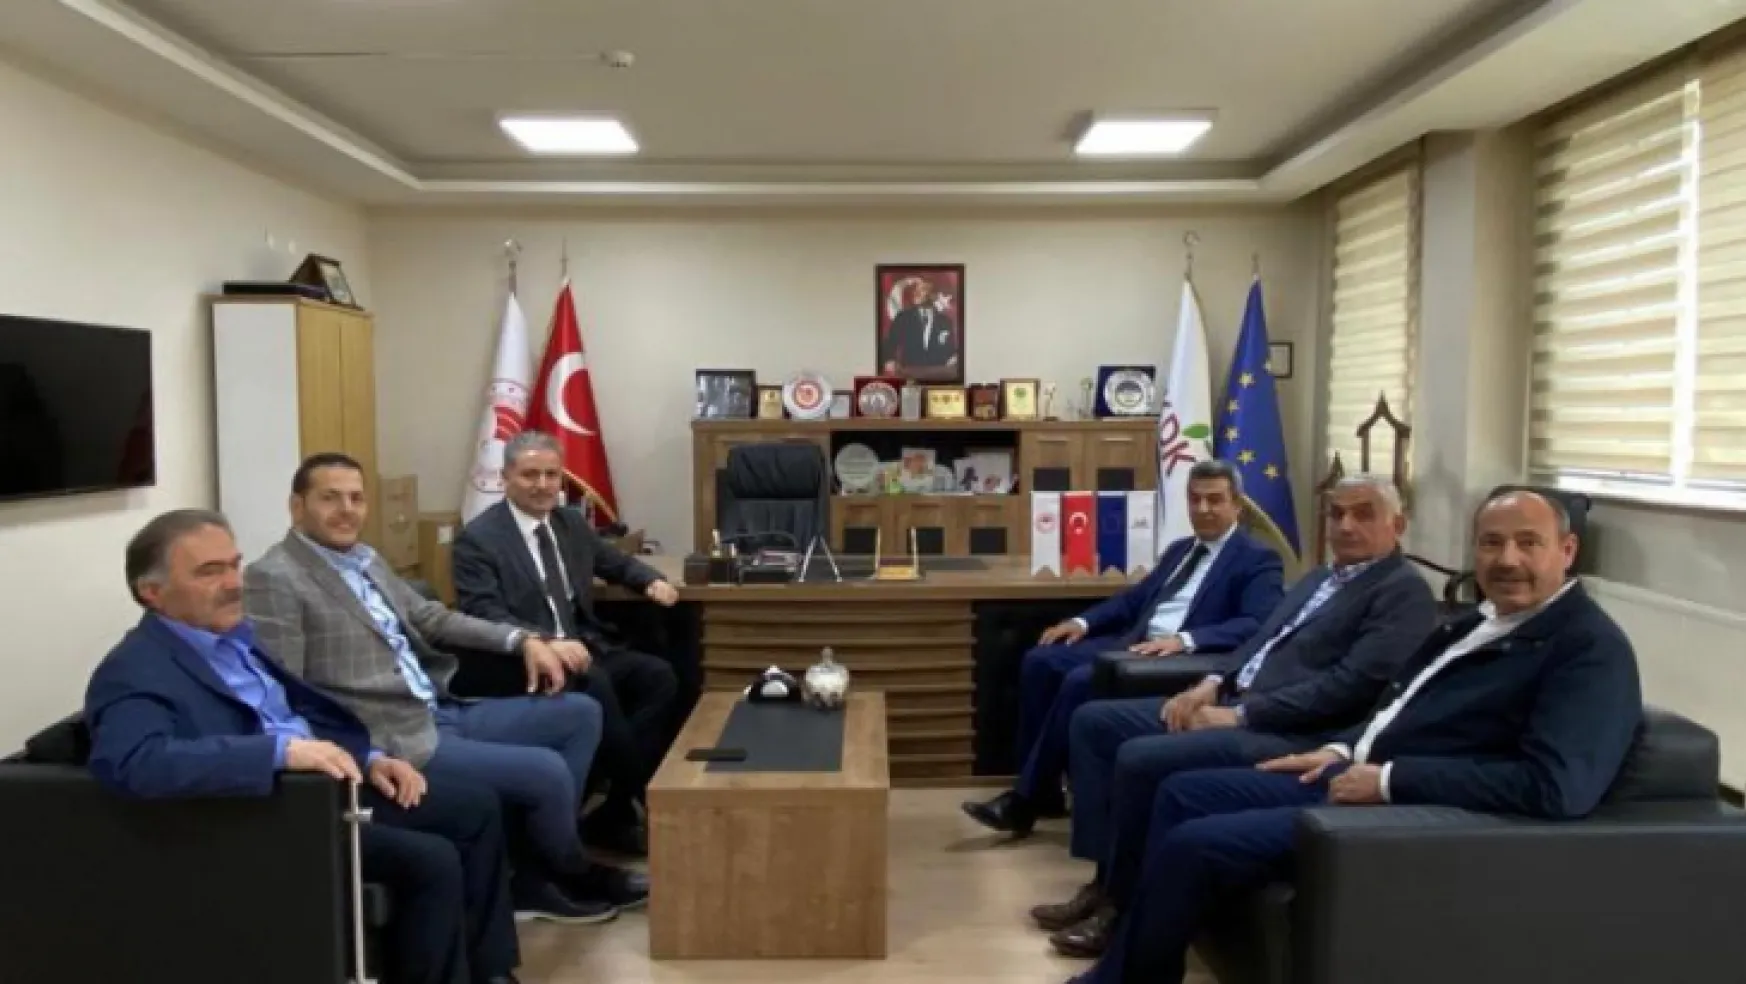 Milletvekili Çakır'dan TKDK'ya ziyaret